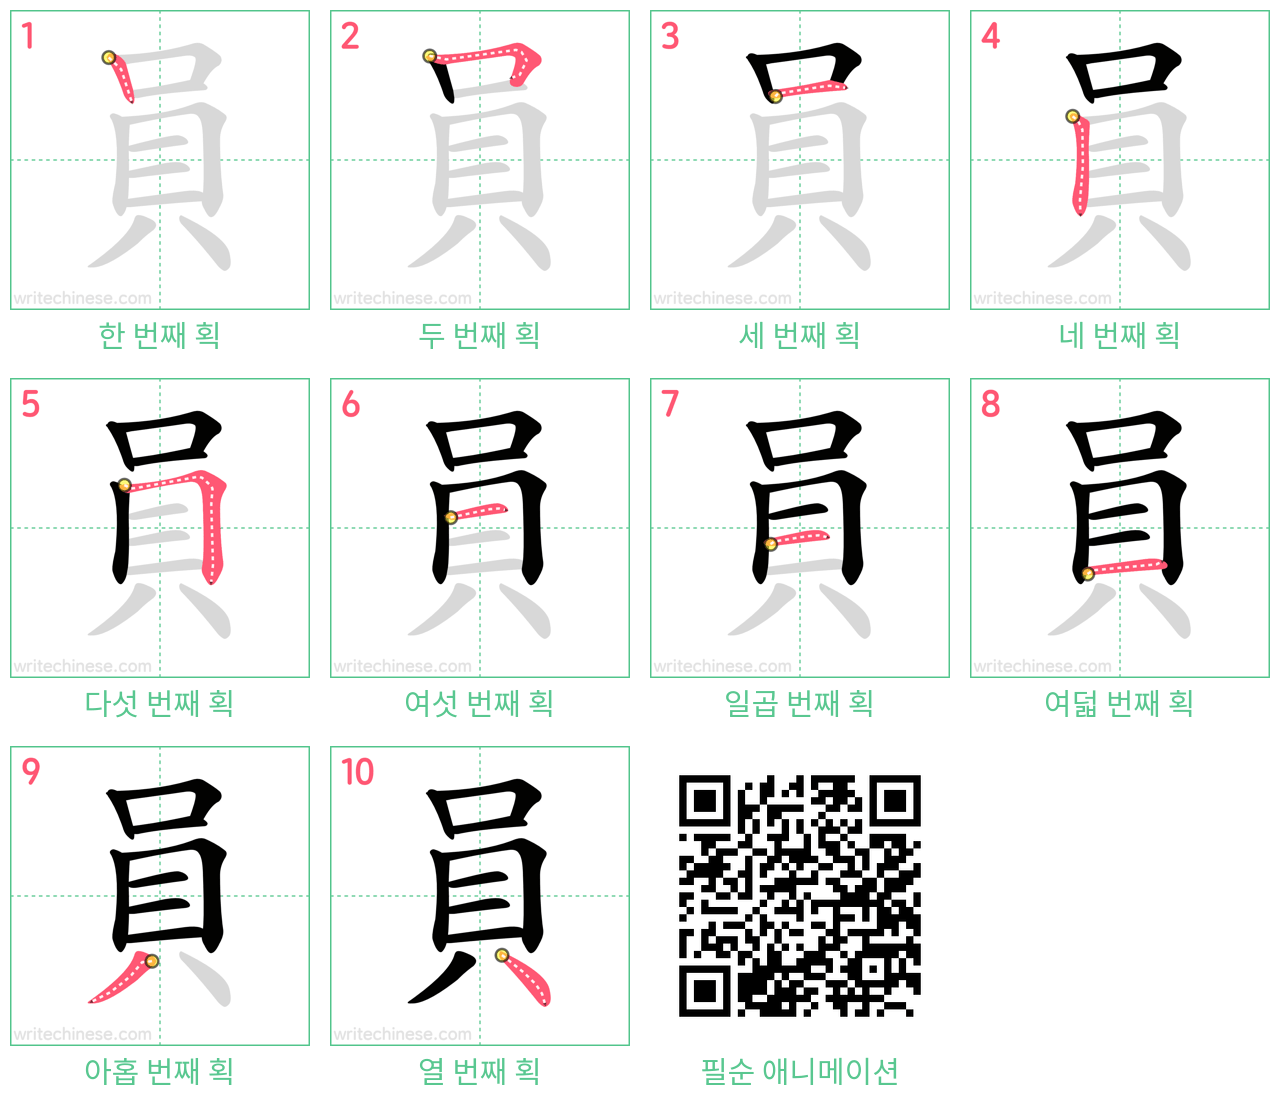 員 step-by-step stroke order diagrams